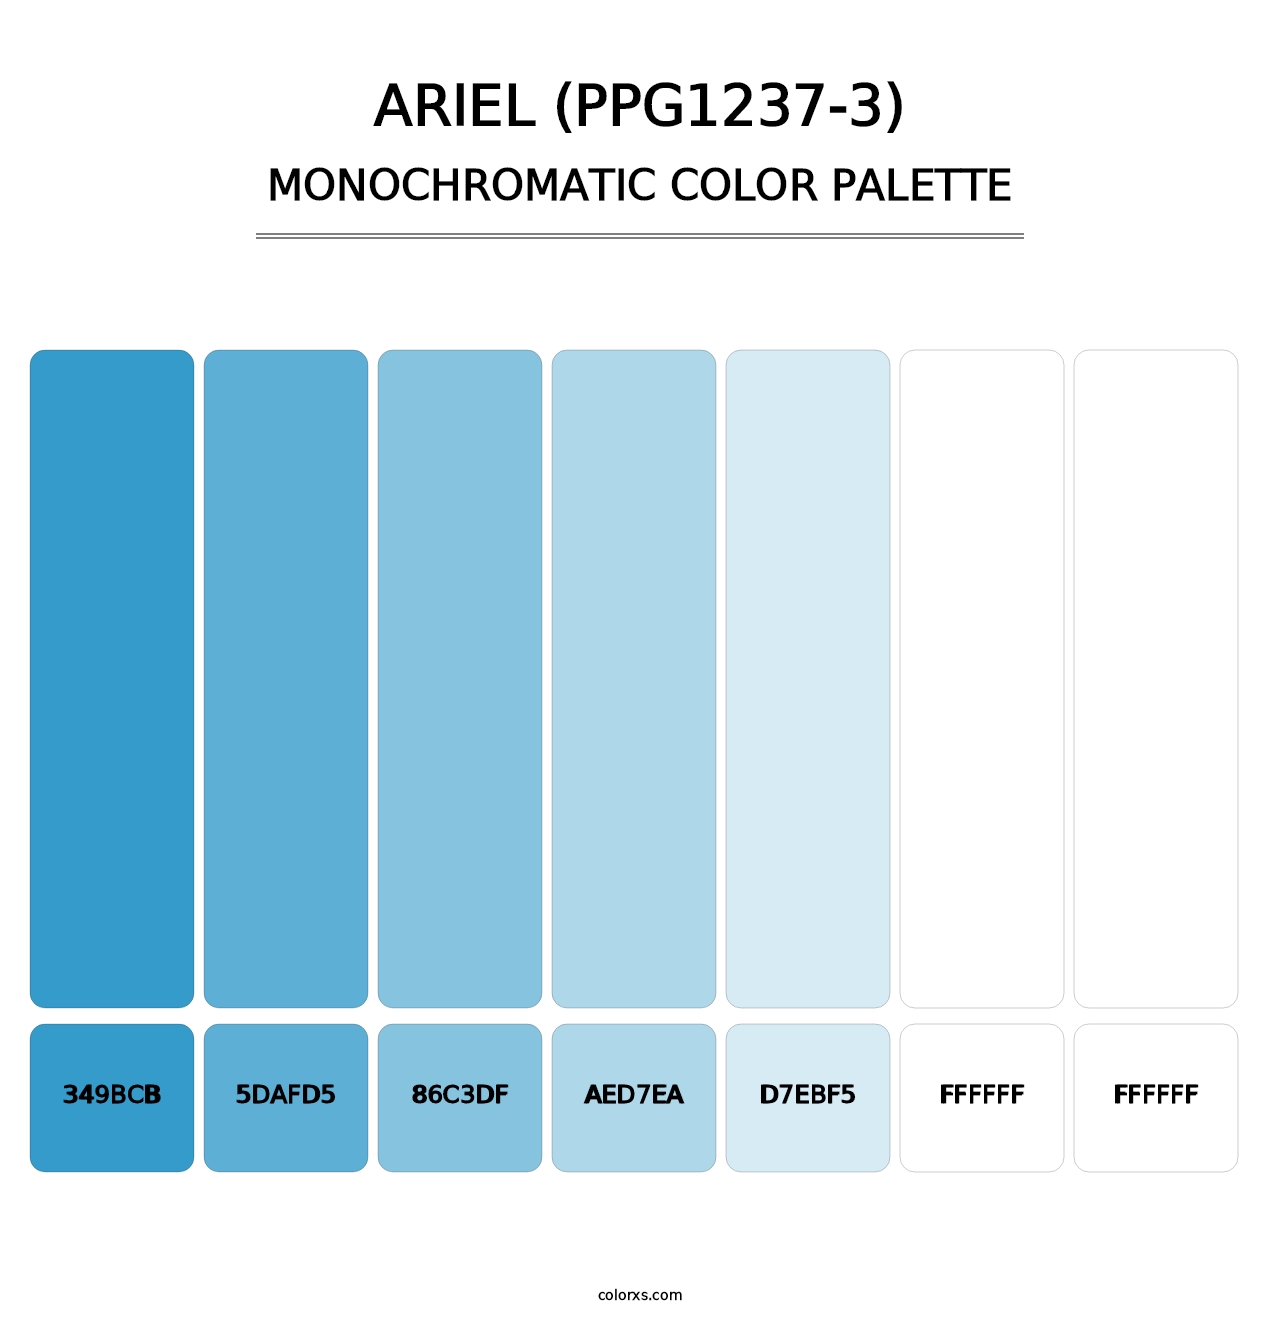 Ariel (PPG1237-3) - Monochromatic Color Palette